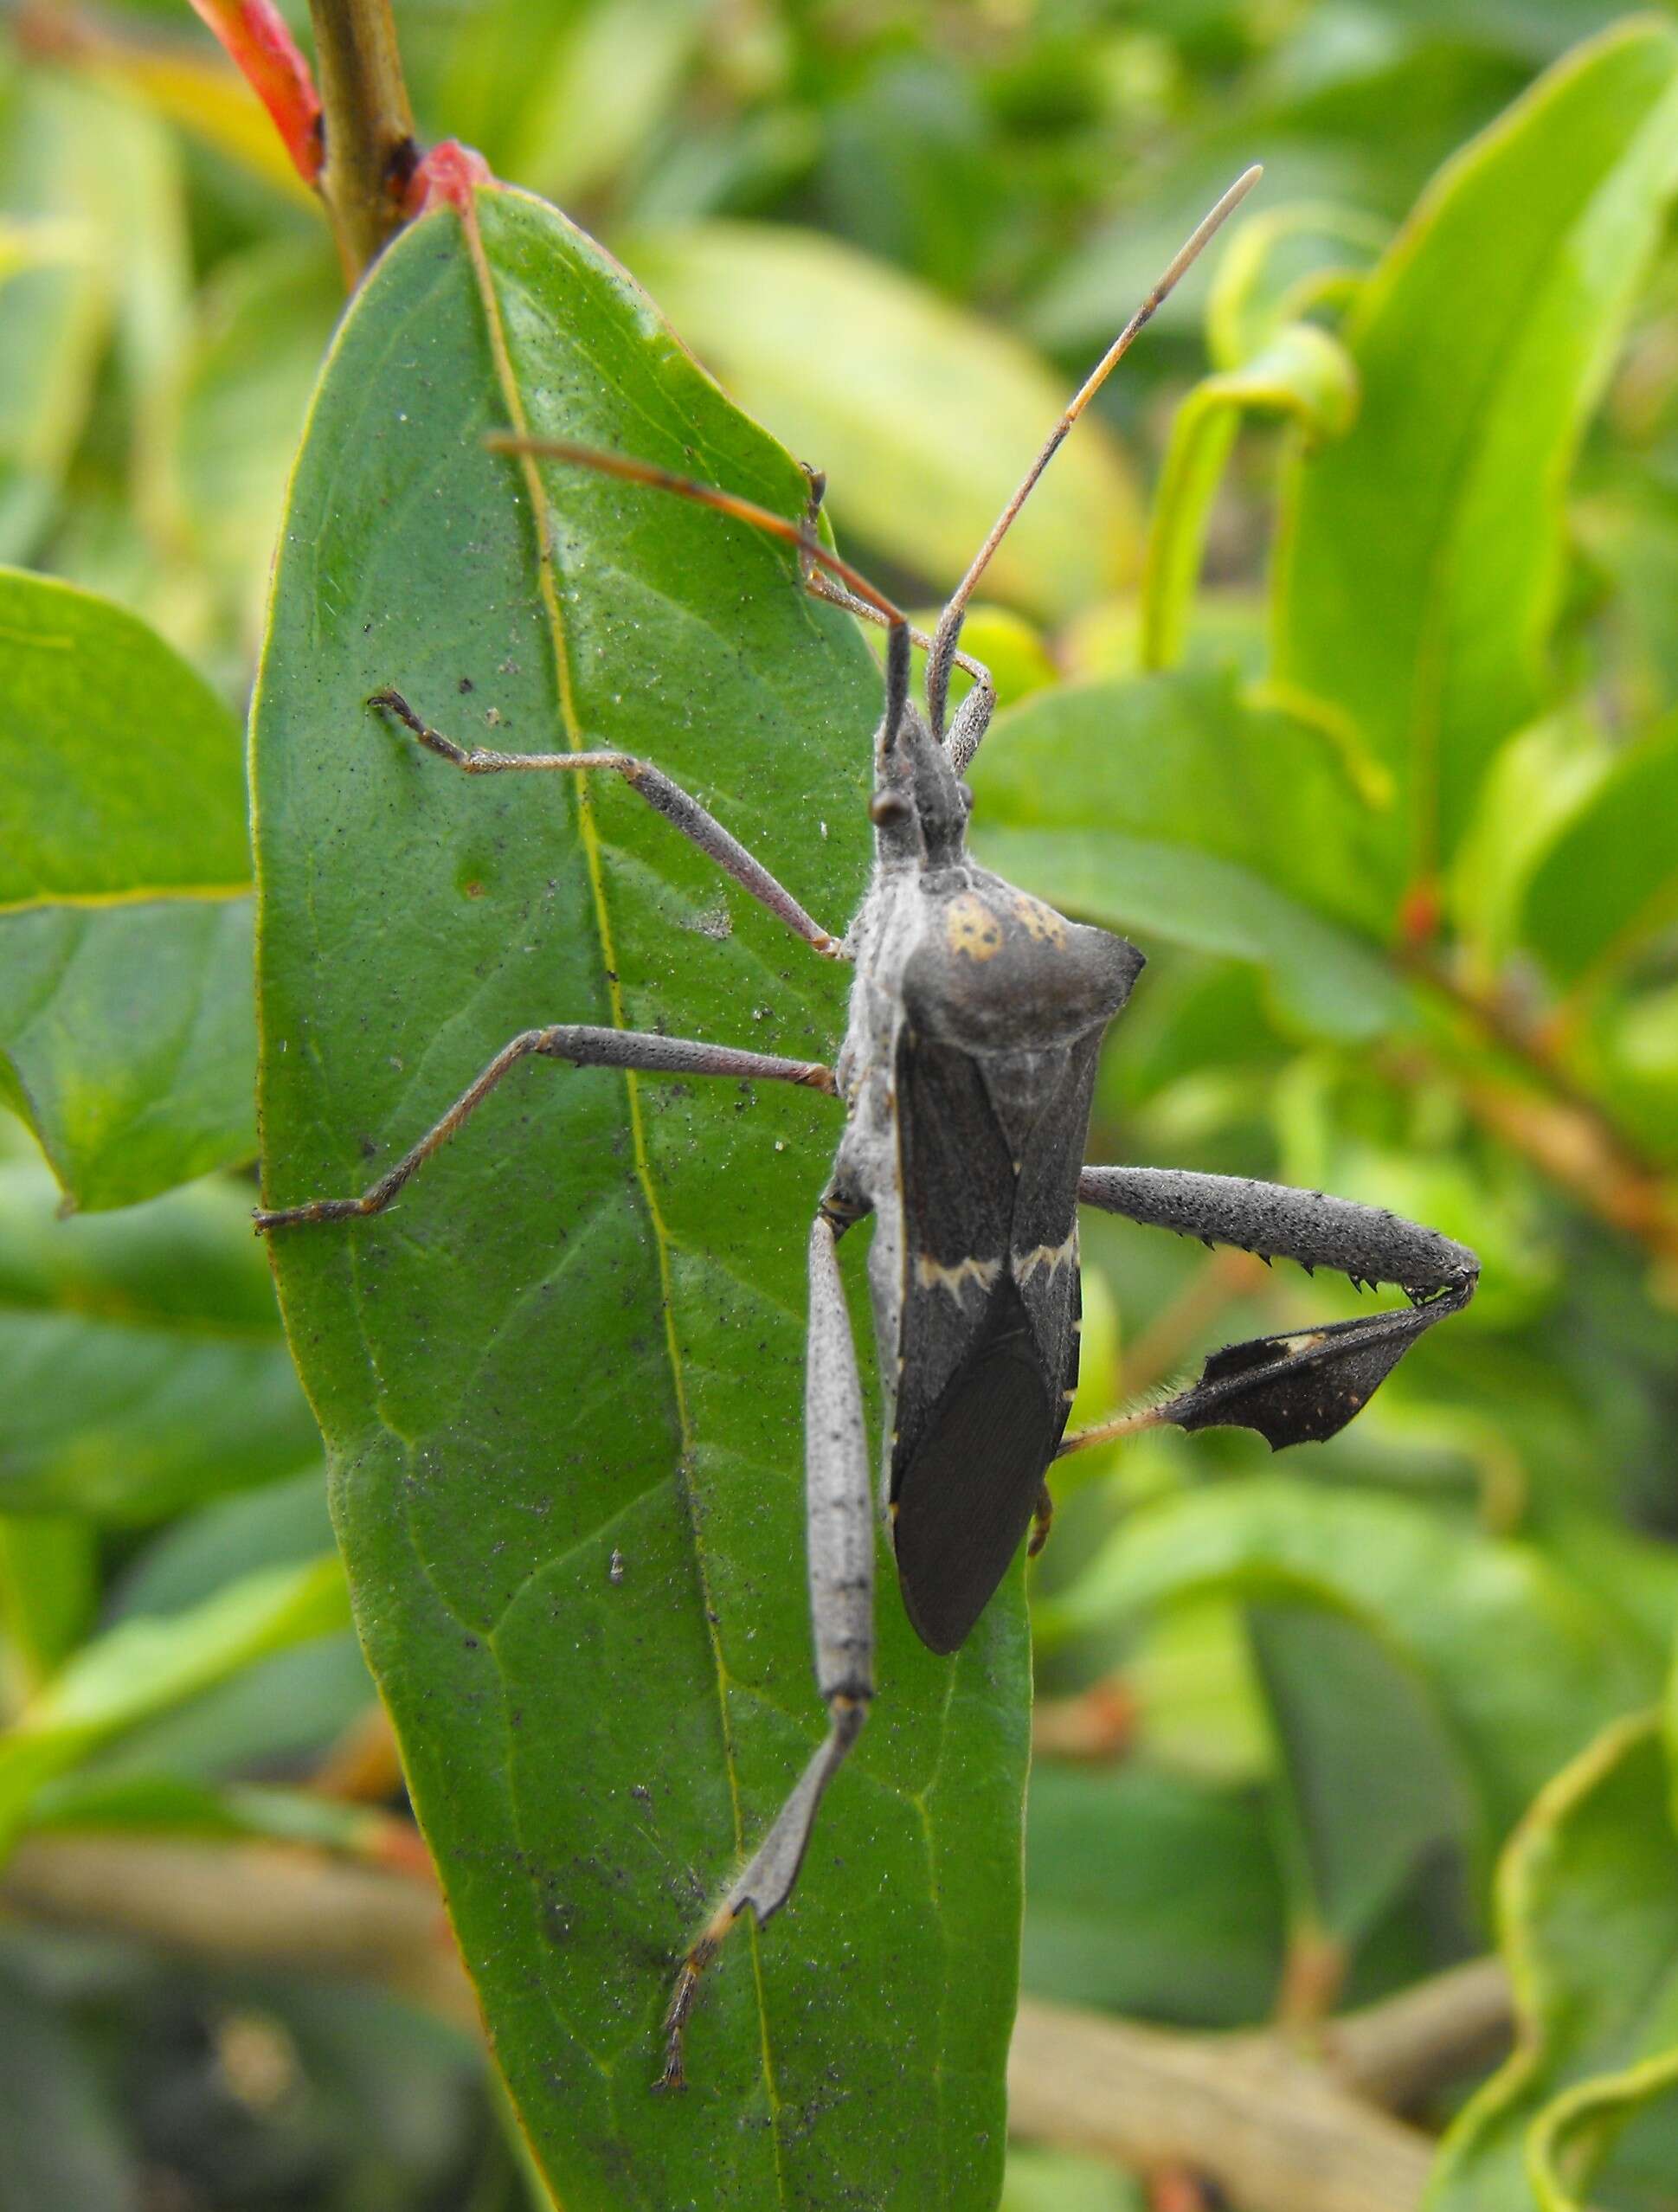 Image of Leaf-footed bug